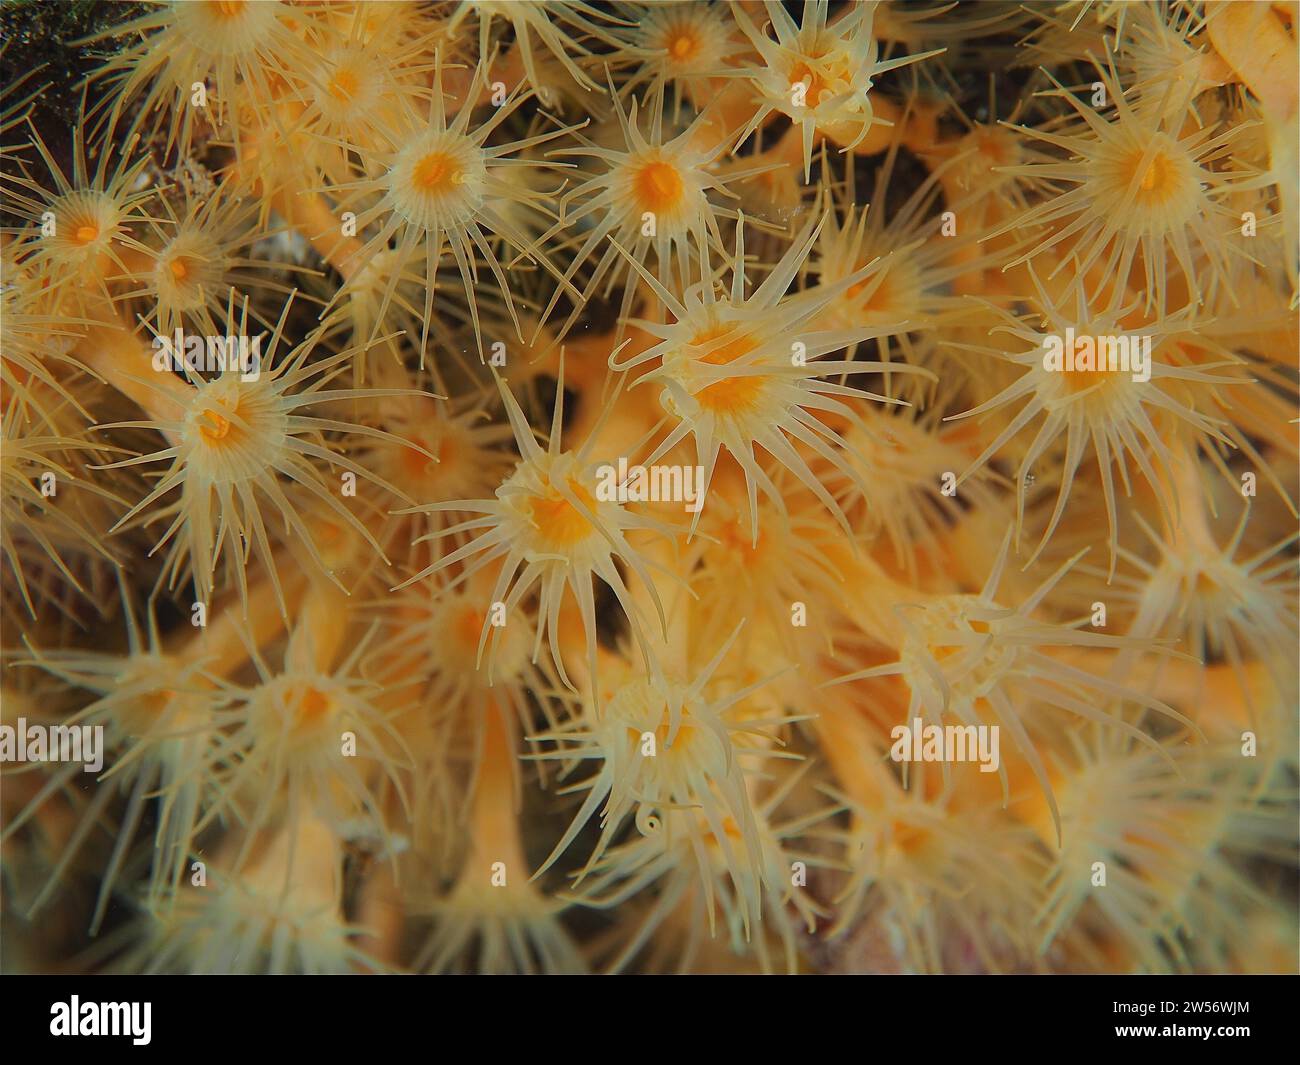 Yellow cluster anemone (Parazoanthus axinellae), dive site marine reserve Cap de Creus, Rosas, Costa Brava, Spain, Mediterranean Sea Stock Photo